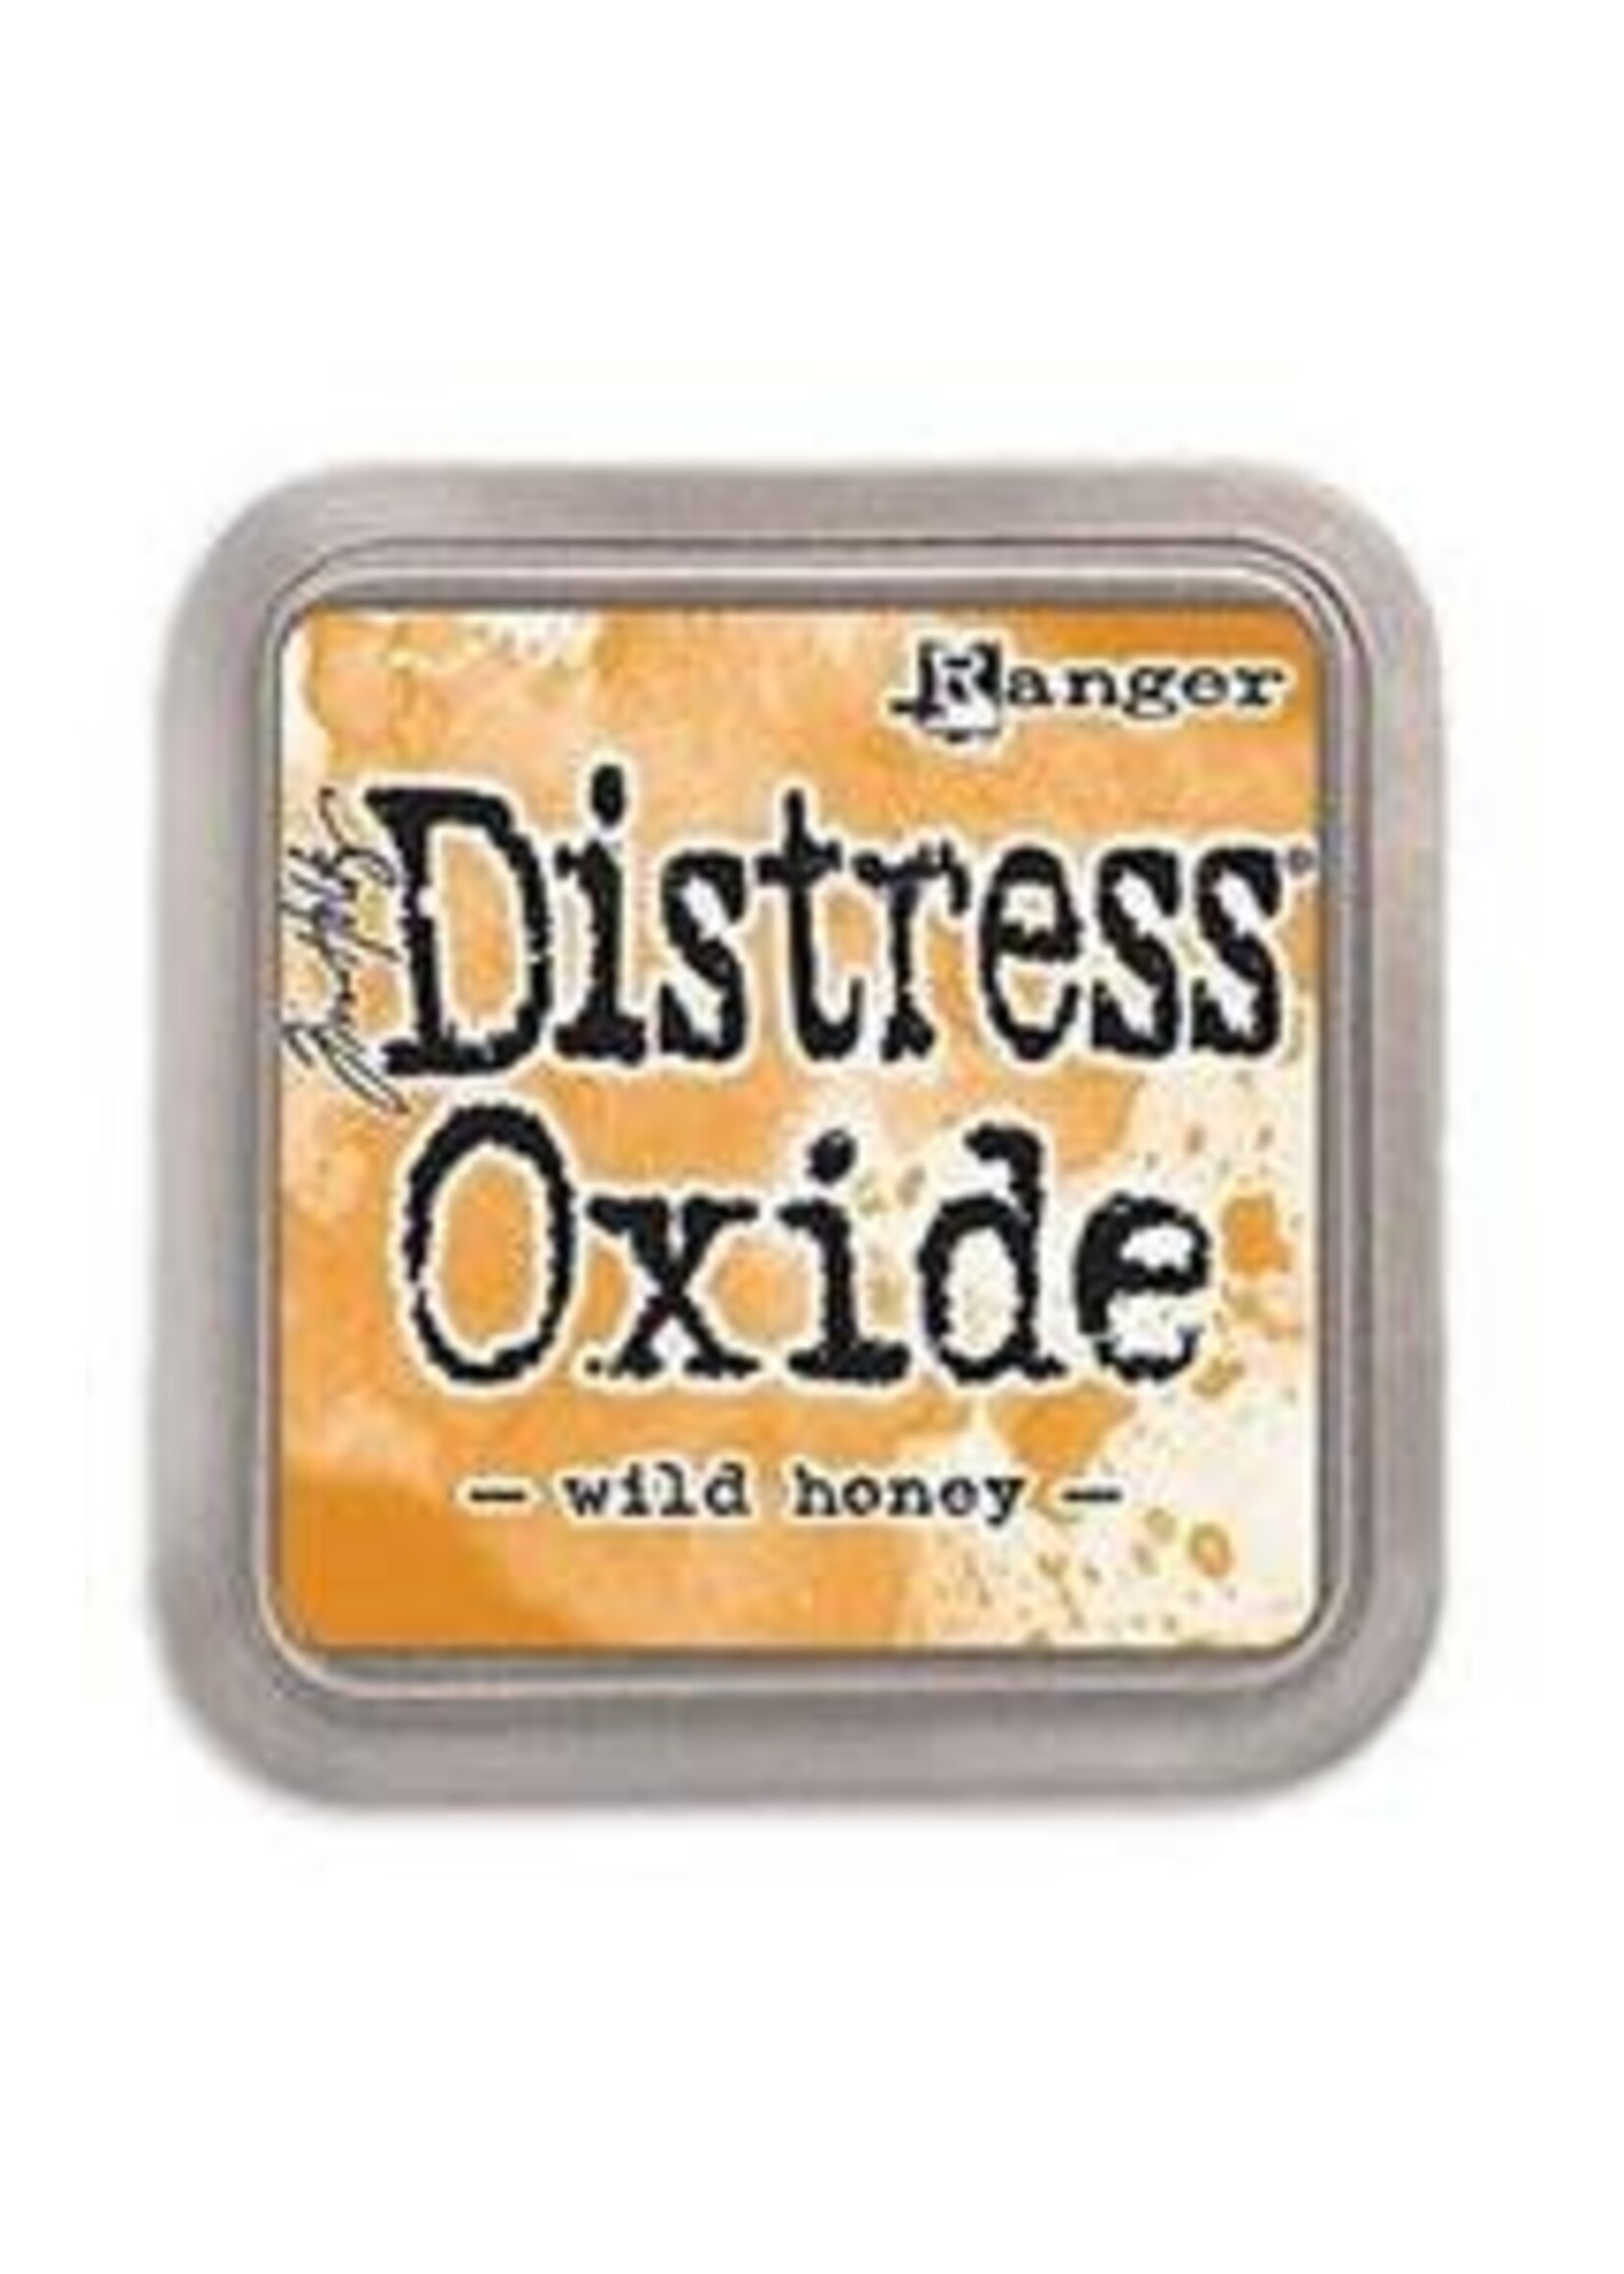 RANGER Distress Oxide Wild Honey